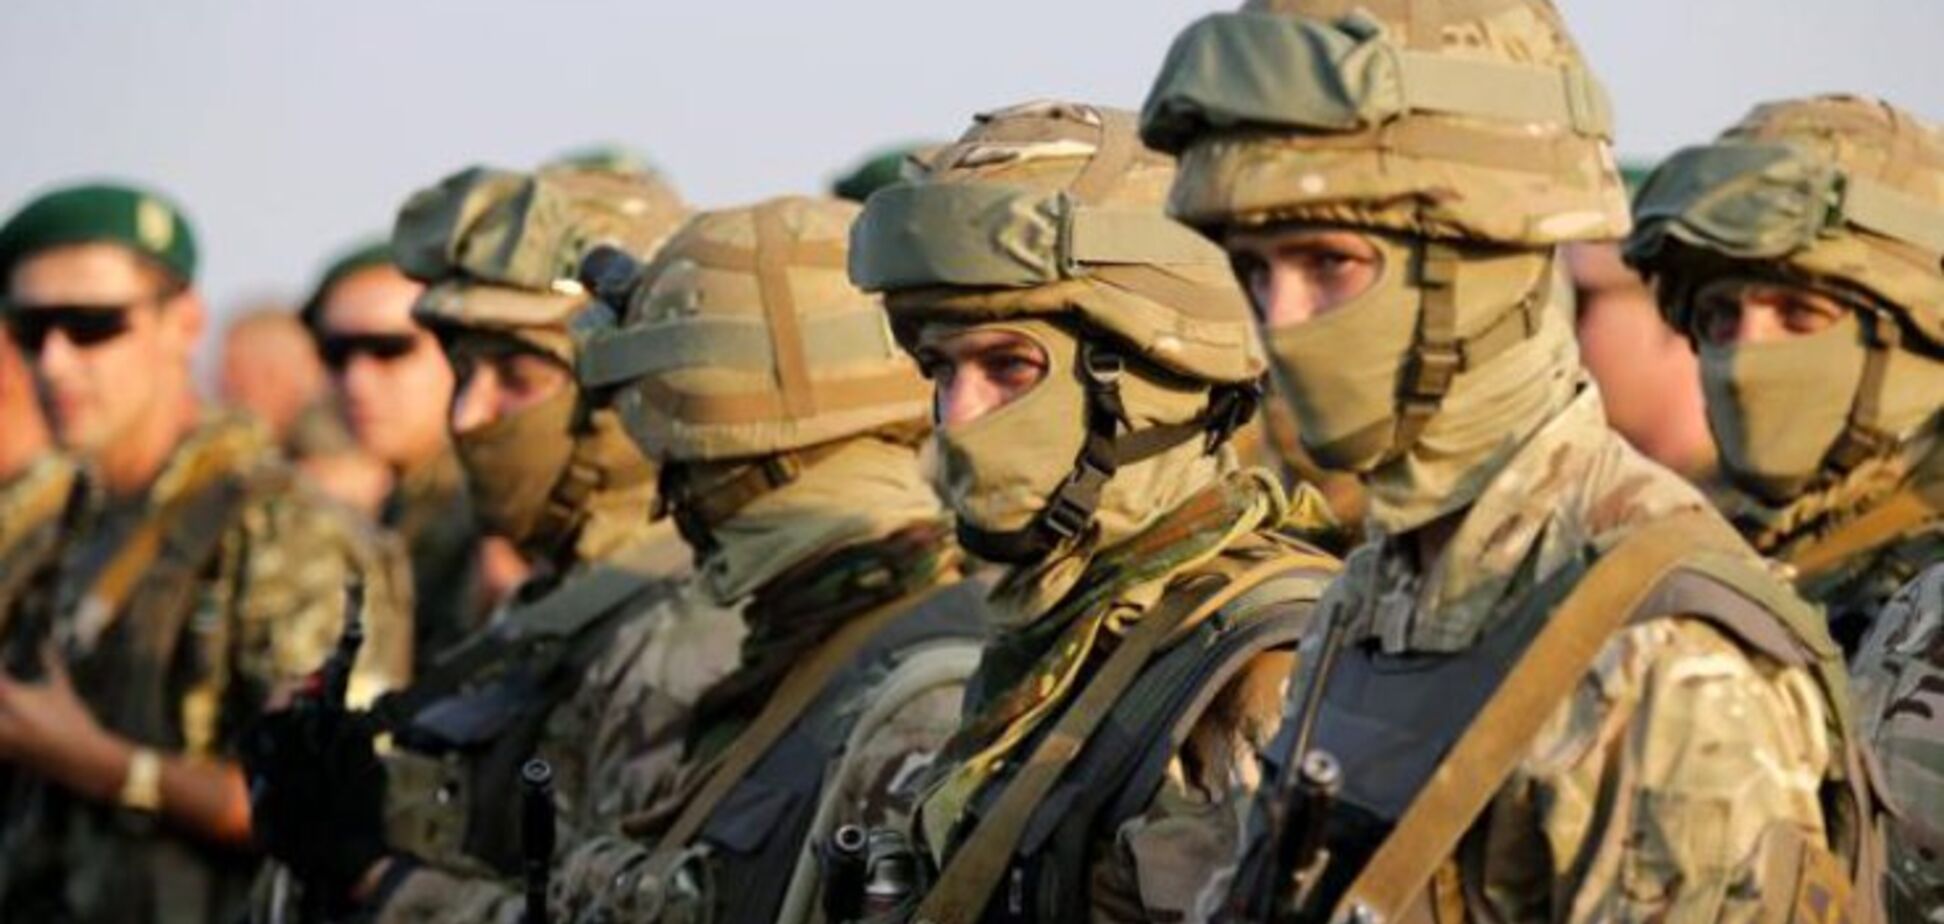 Меньше Албании: Полторак сказал, сколько Украина тратит на одного солдата